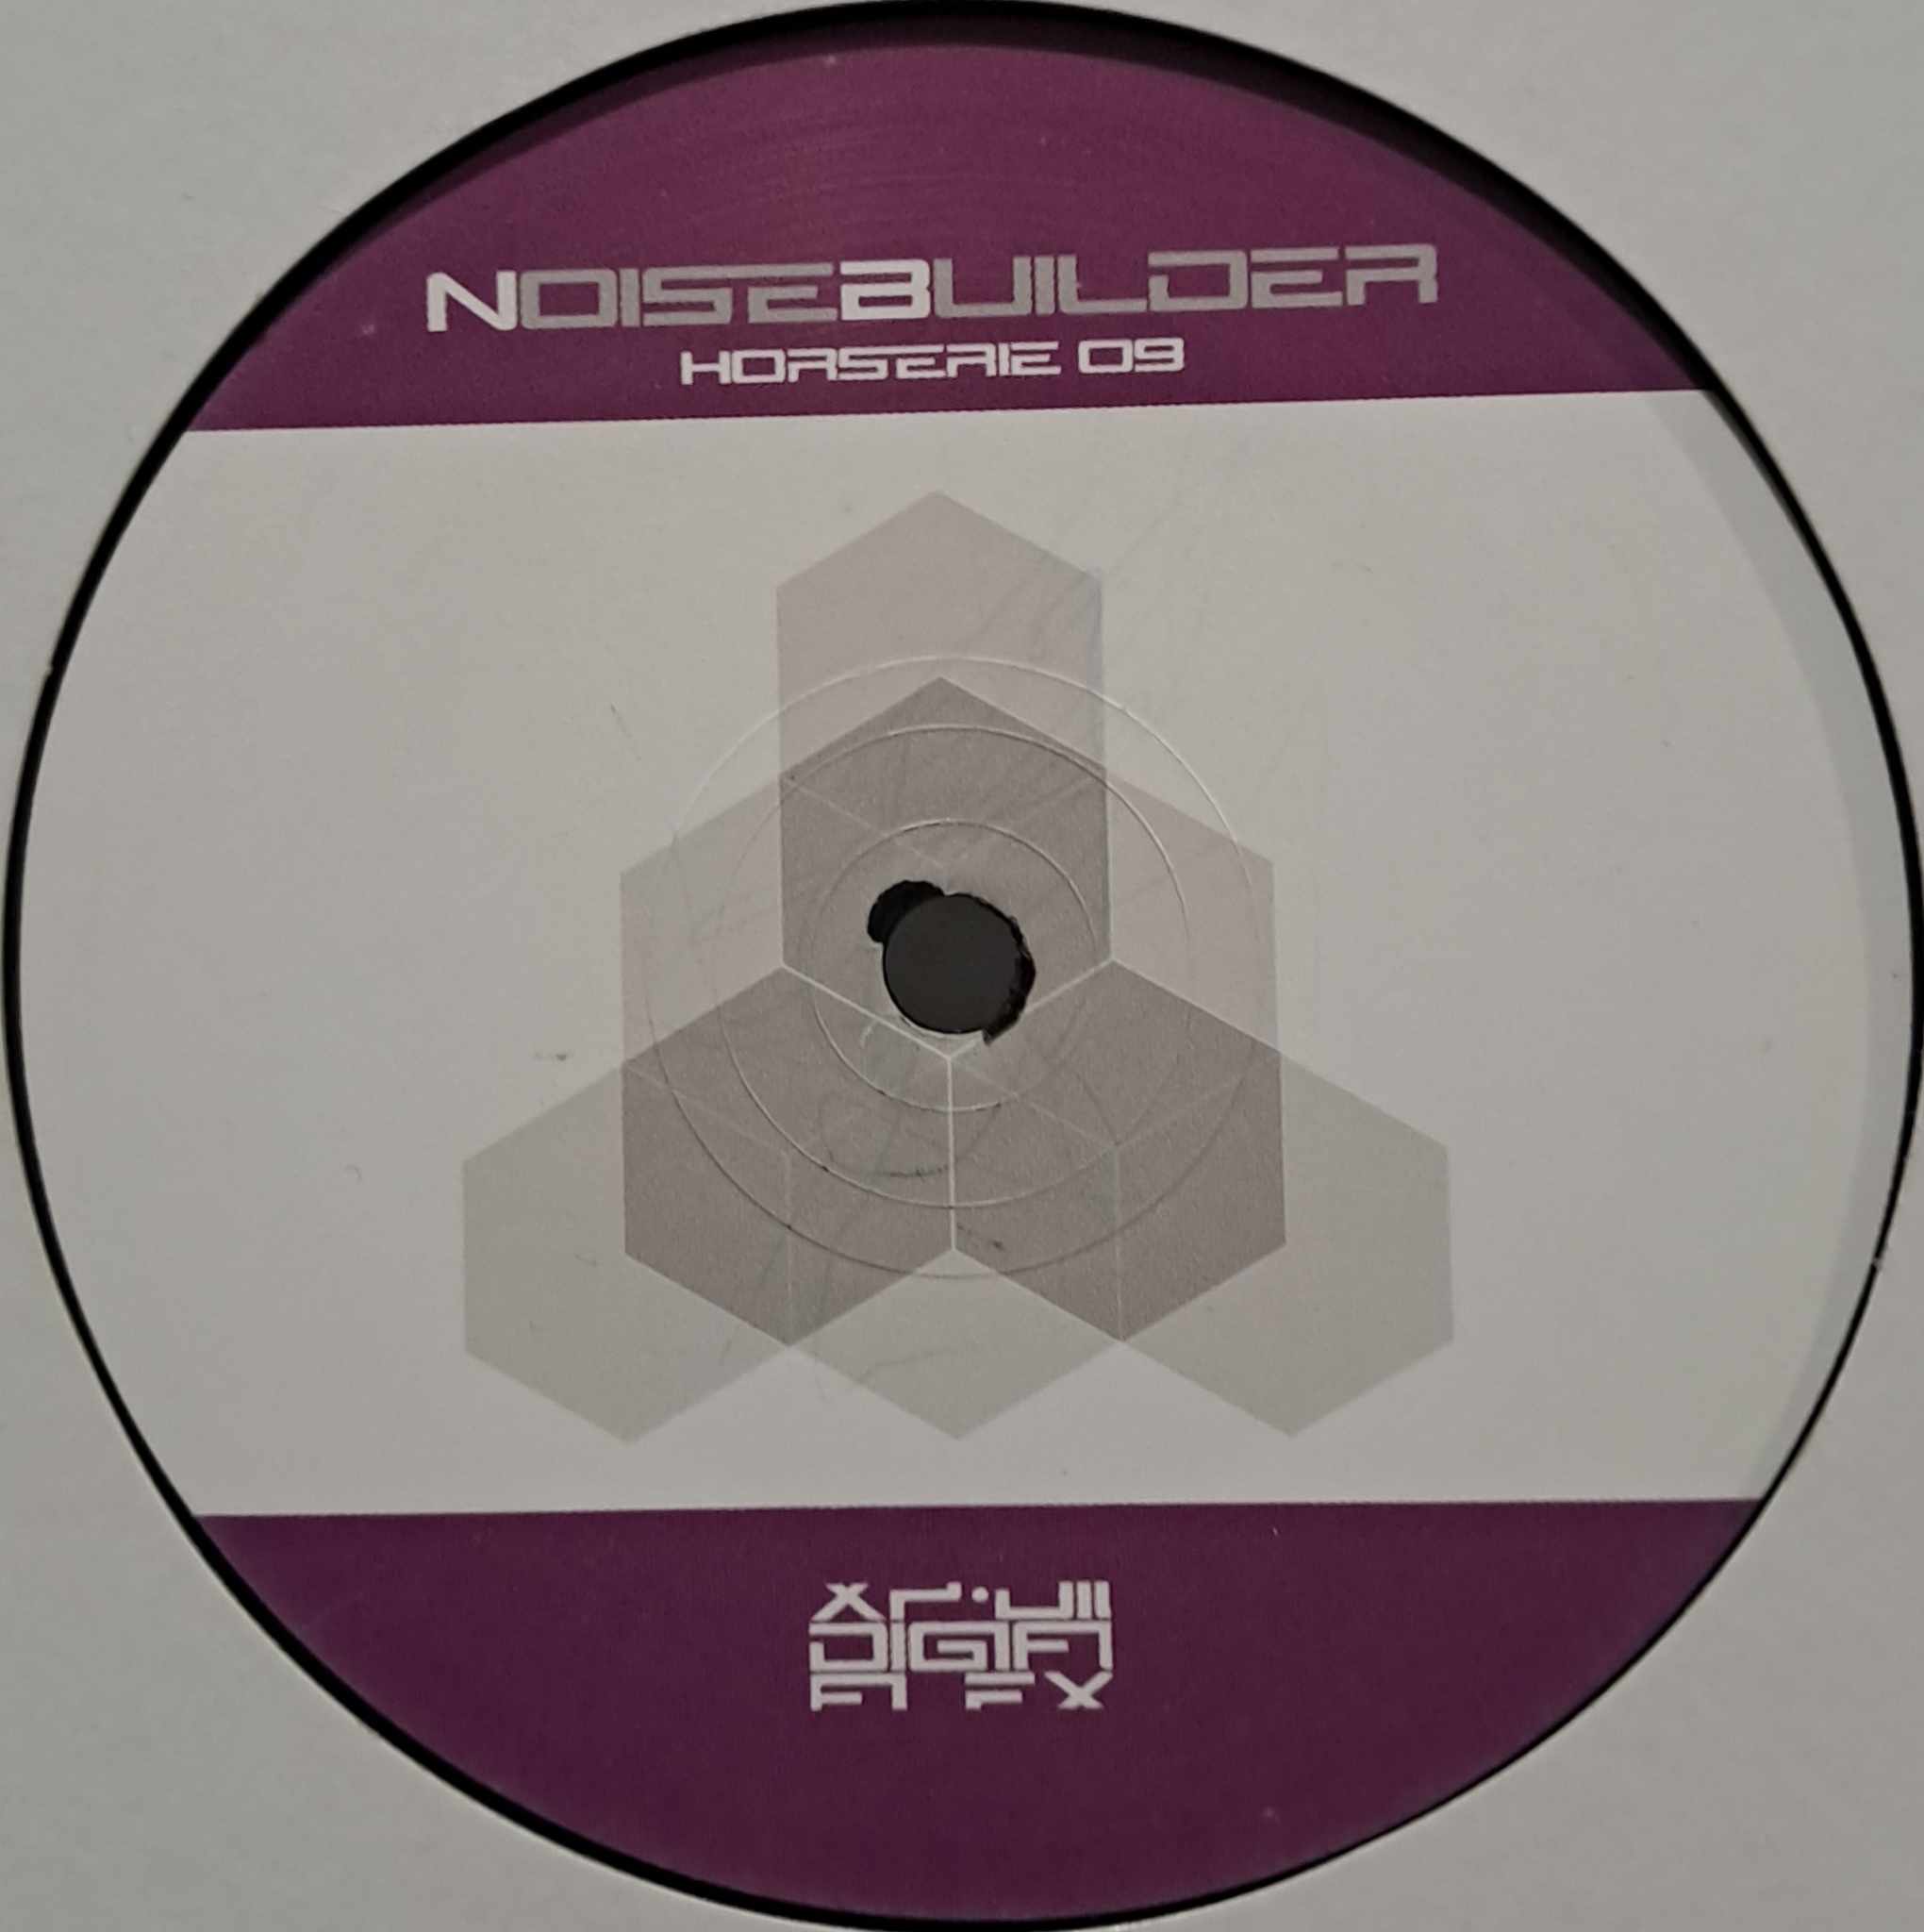 Noisebuilder Horserie 09 - vinyle hard techno